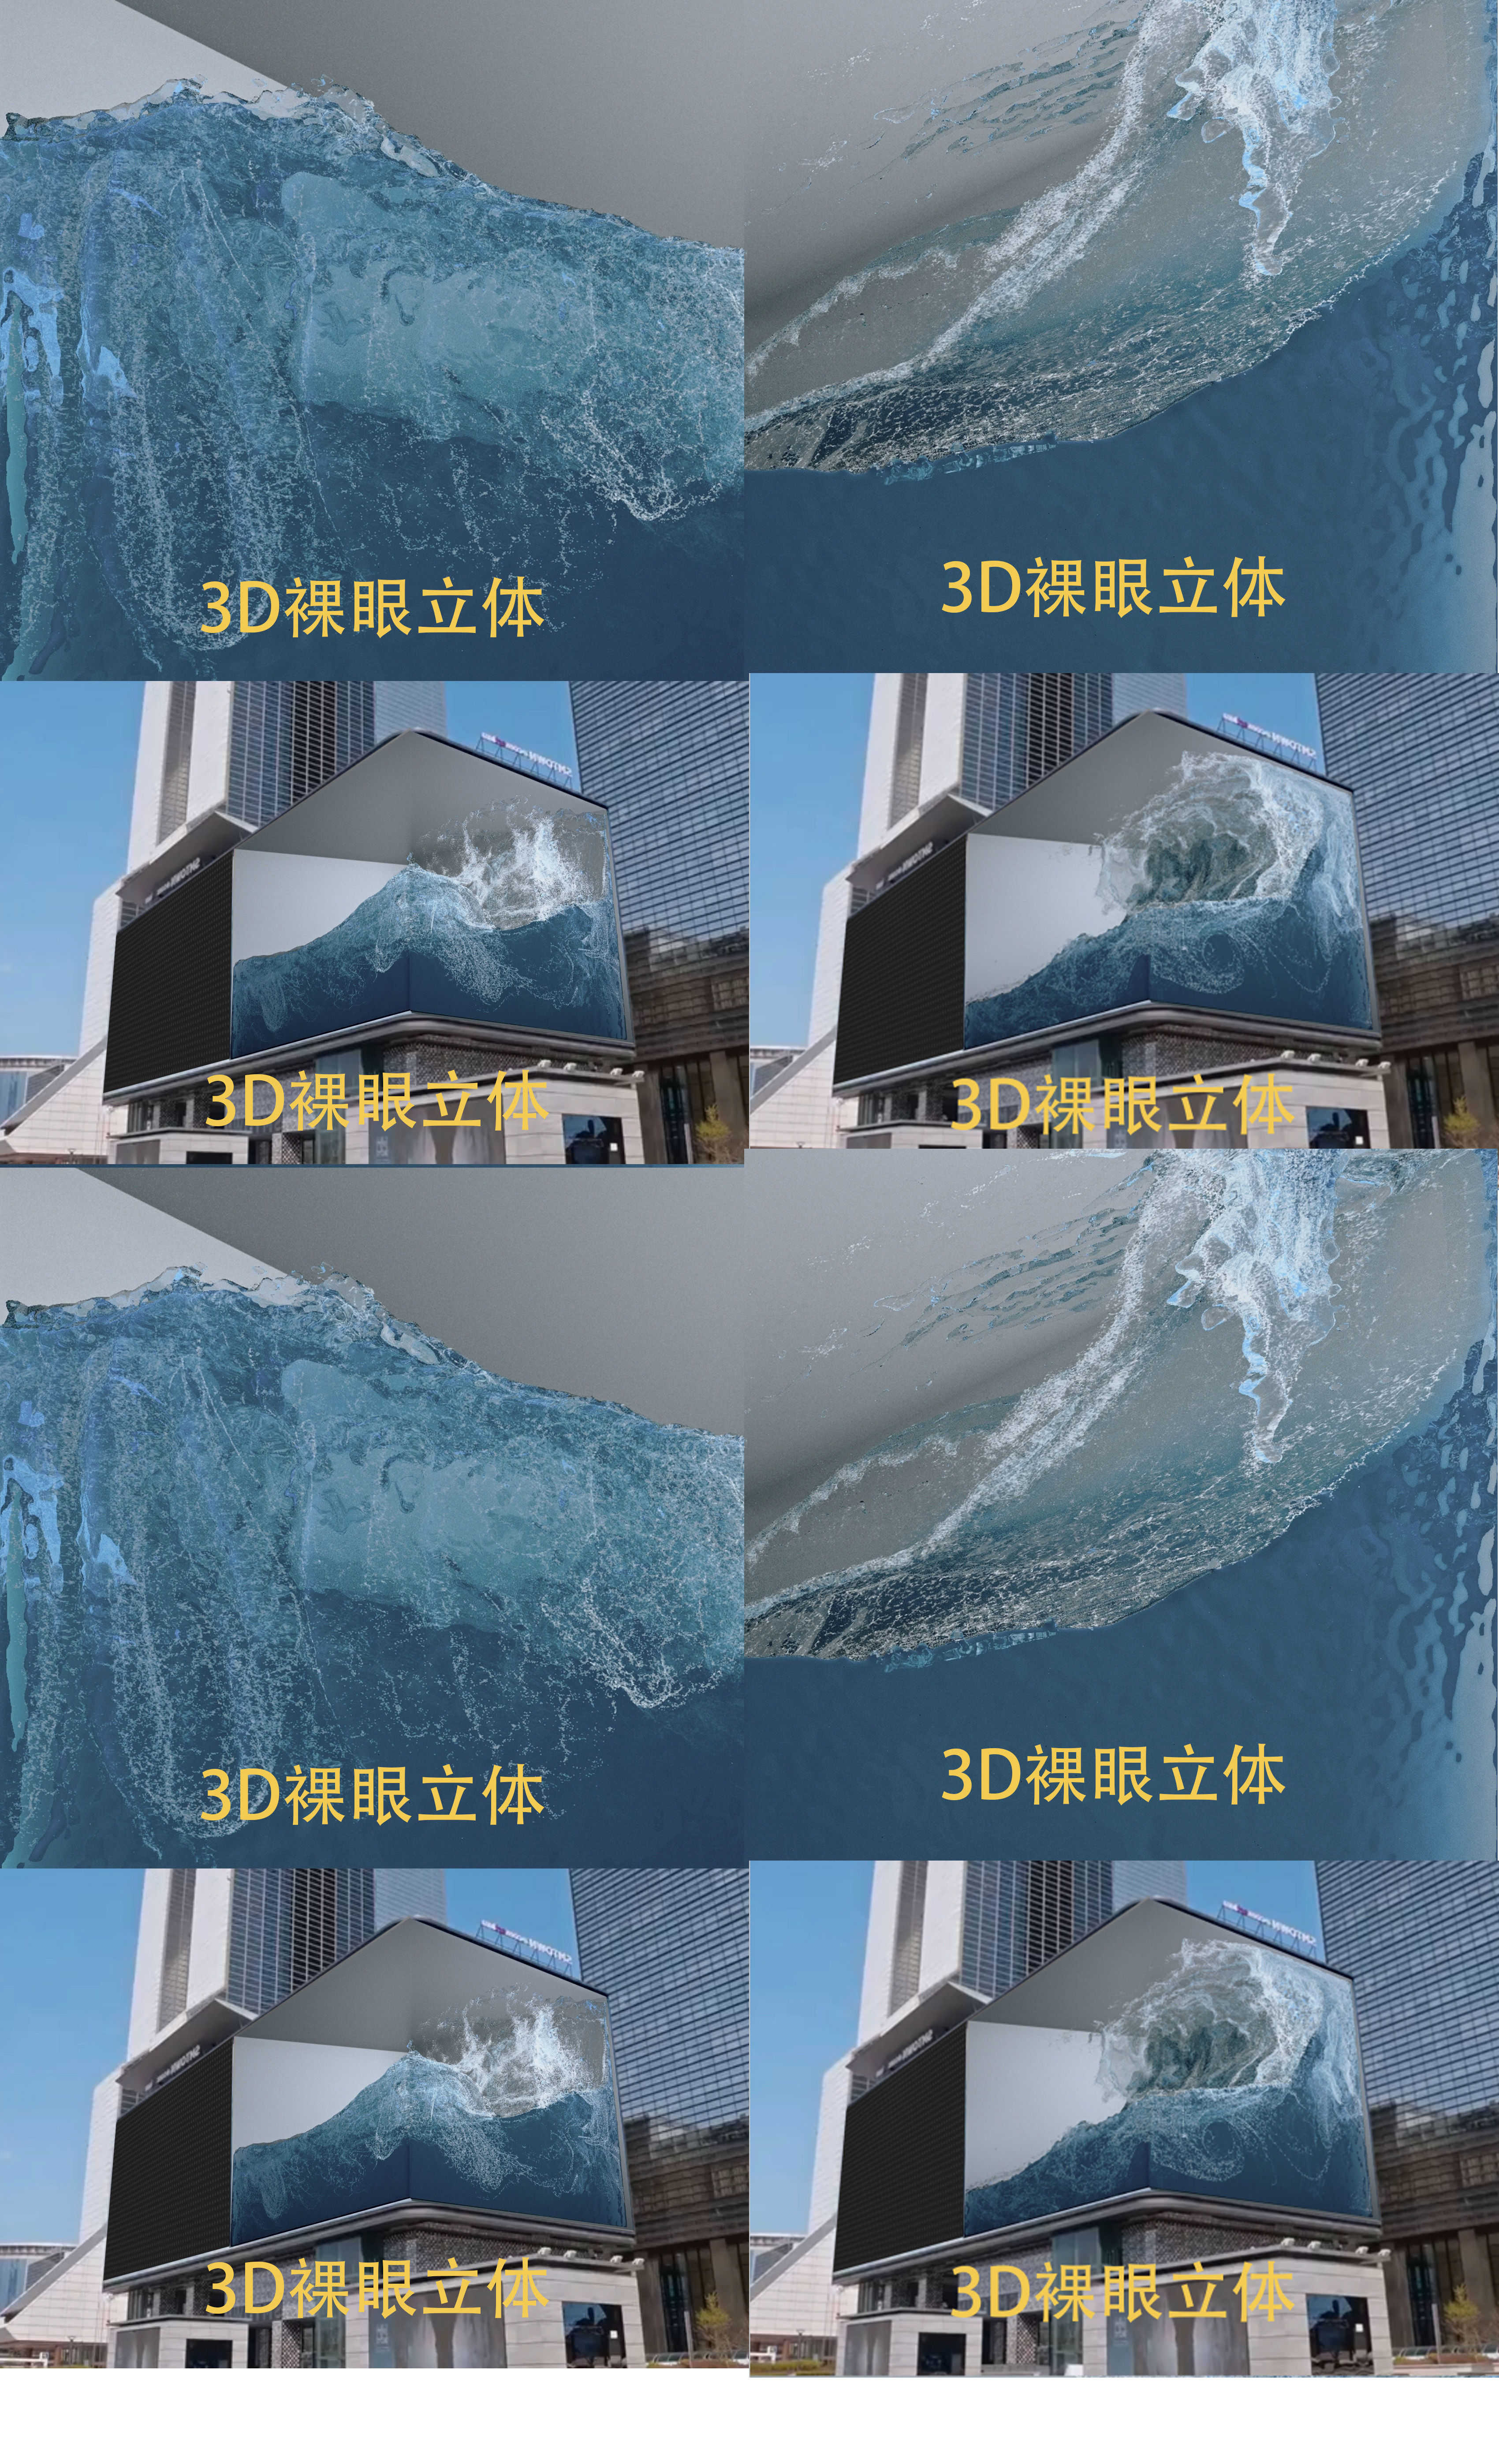 模仿韩国sm公司led大屏播放的海浪3d裸眼立体效果 视频效果是两个